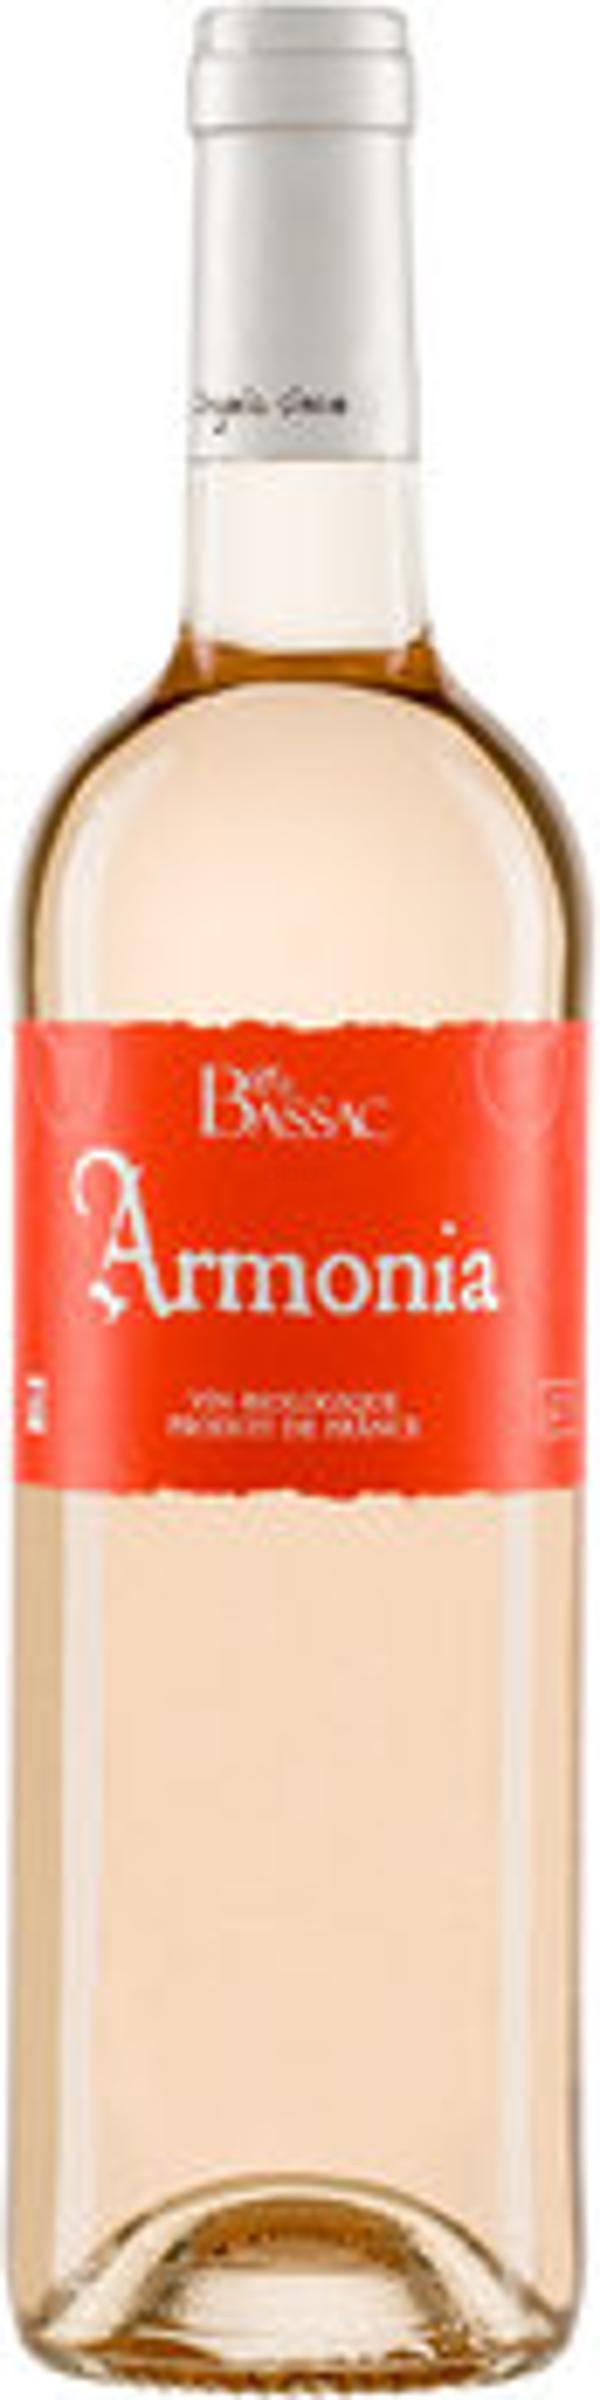 Produktfoto zu Armonia rosé 0,75L